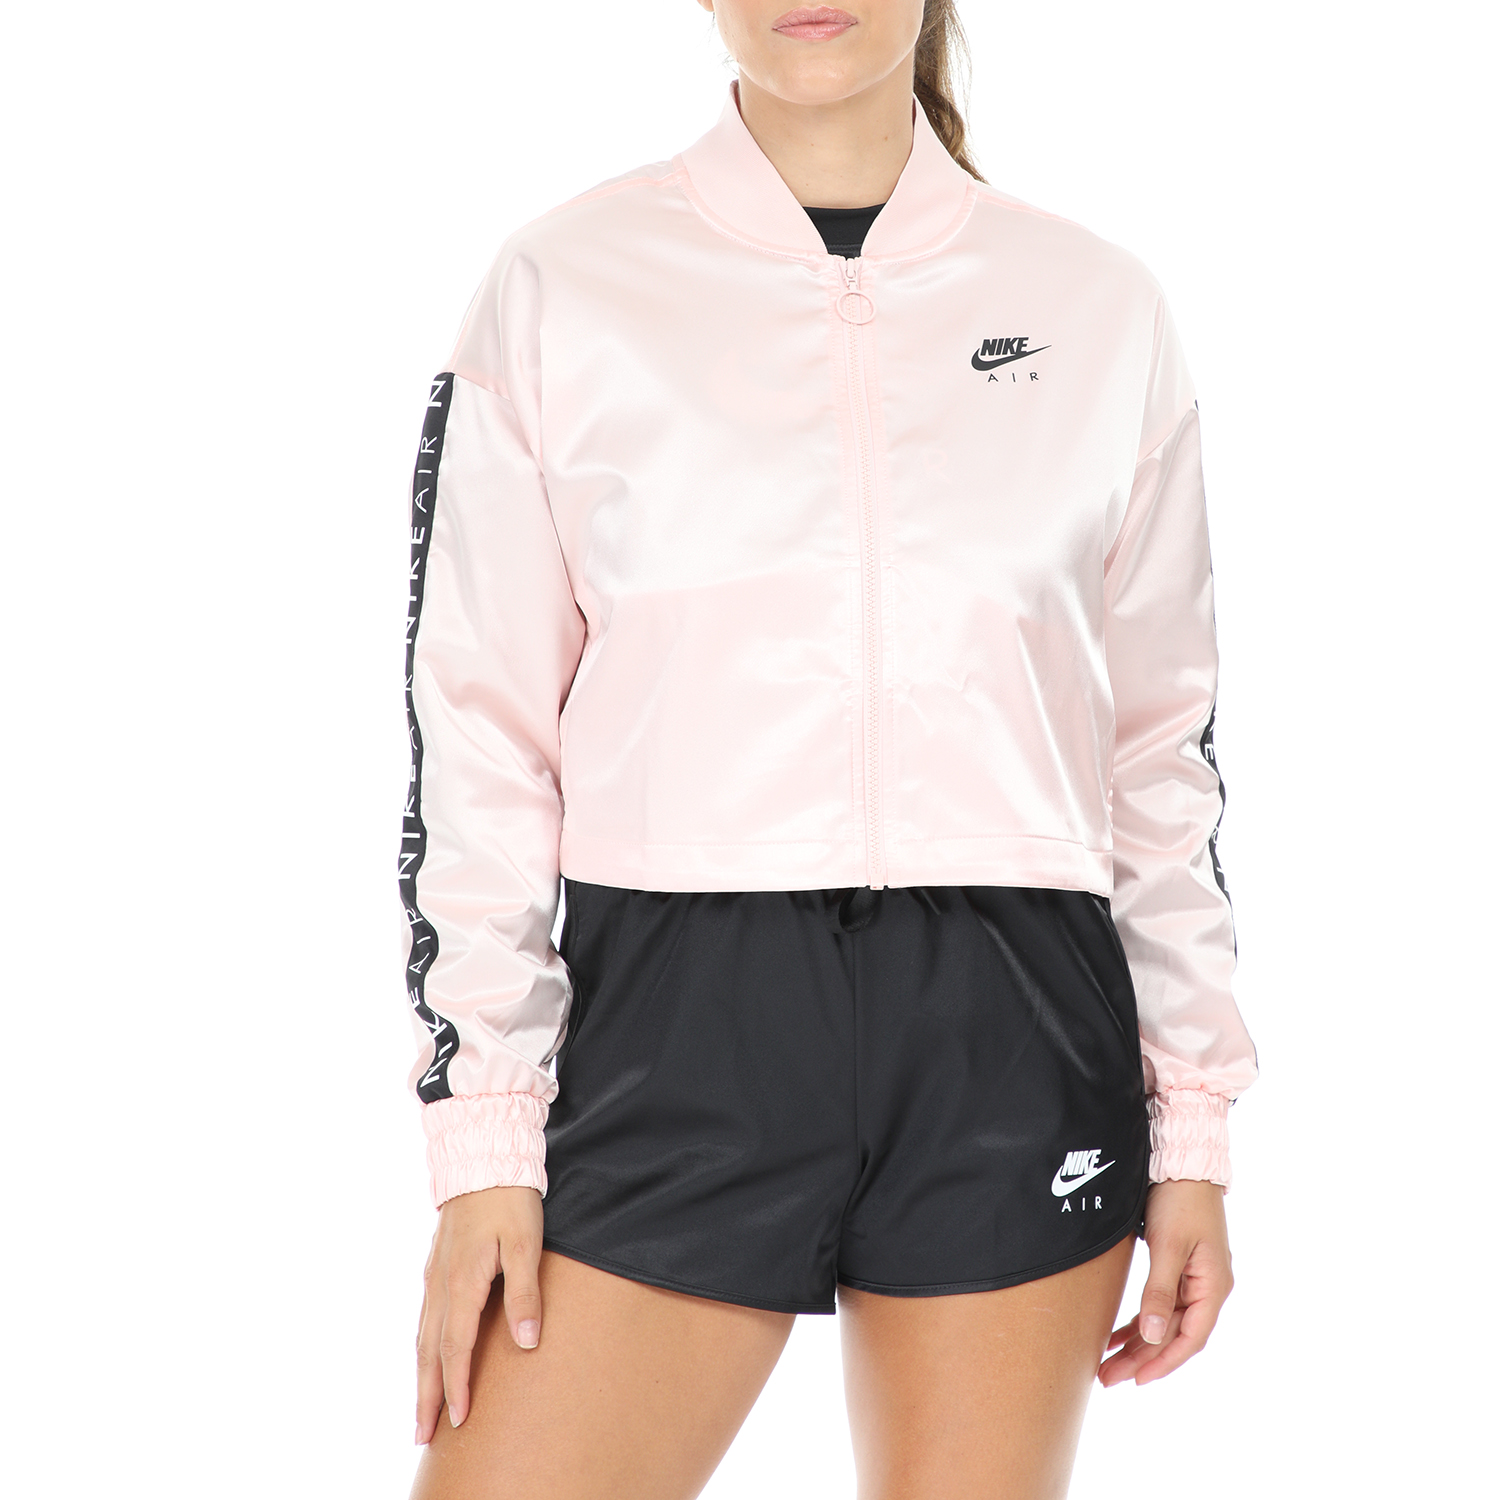 Γυναικεία/Ρούχα/Πανωφόρια/Μπουφάν NIKE - Γυναικείο μπουφάν NIKE NSW AIR TRK SATIN ροζ